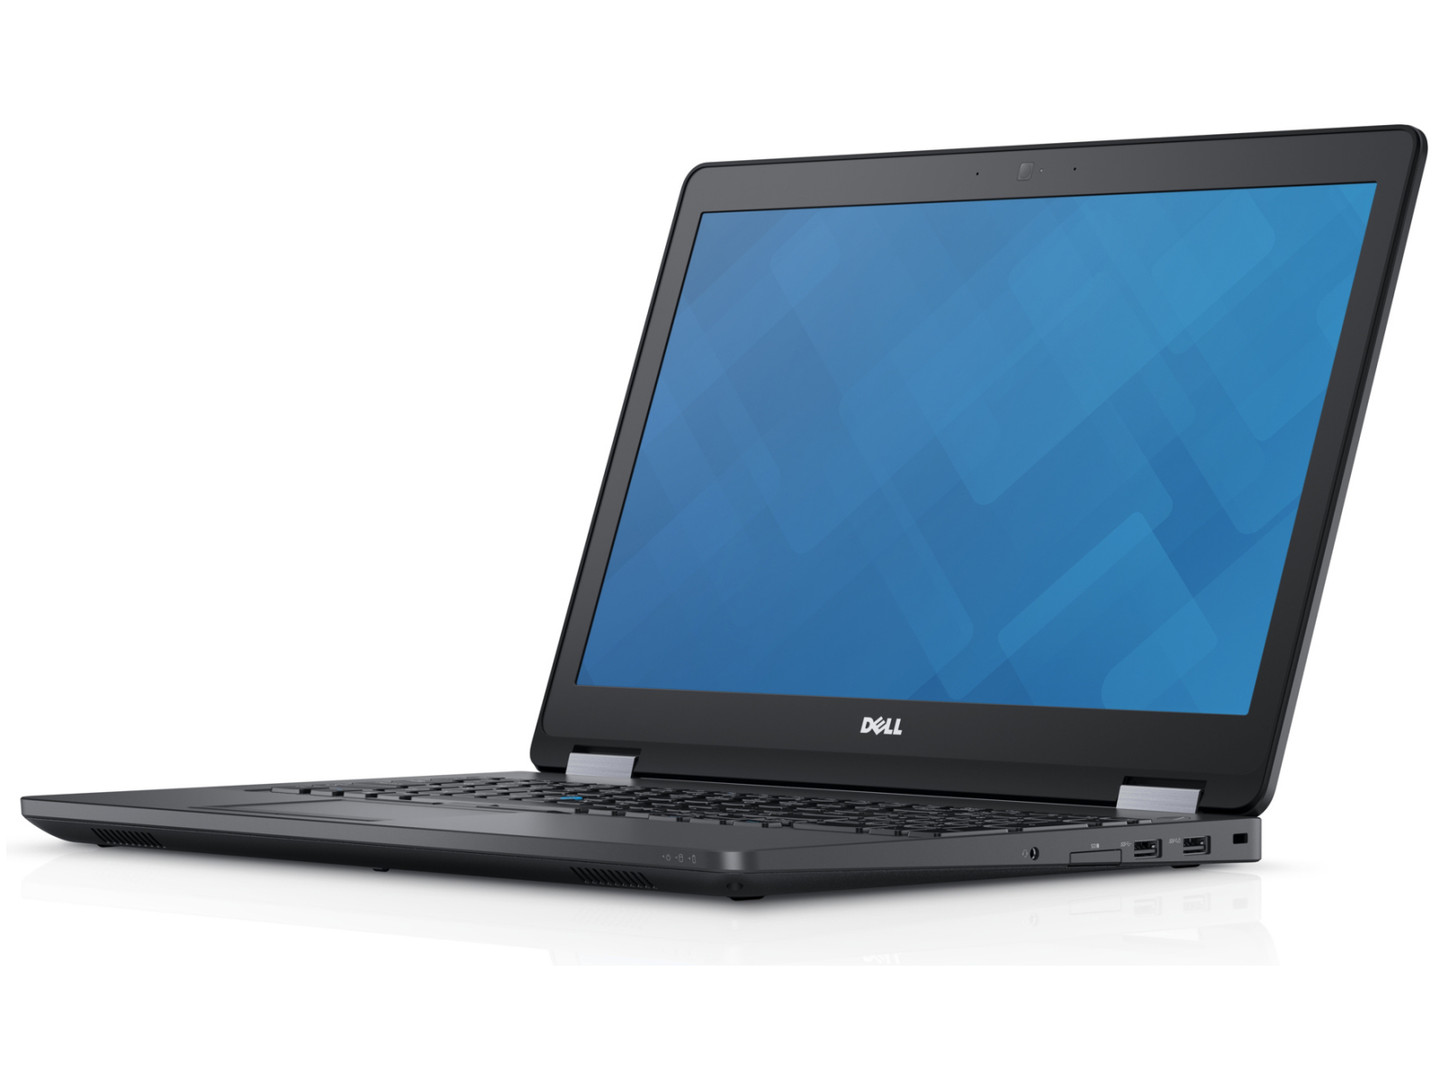 Dell Latitude E5570 Refurbished laptop – 15.6″ / 6TH GEN CORE i5 / 8GB RAM / 256GB SSD